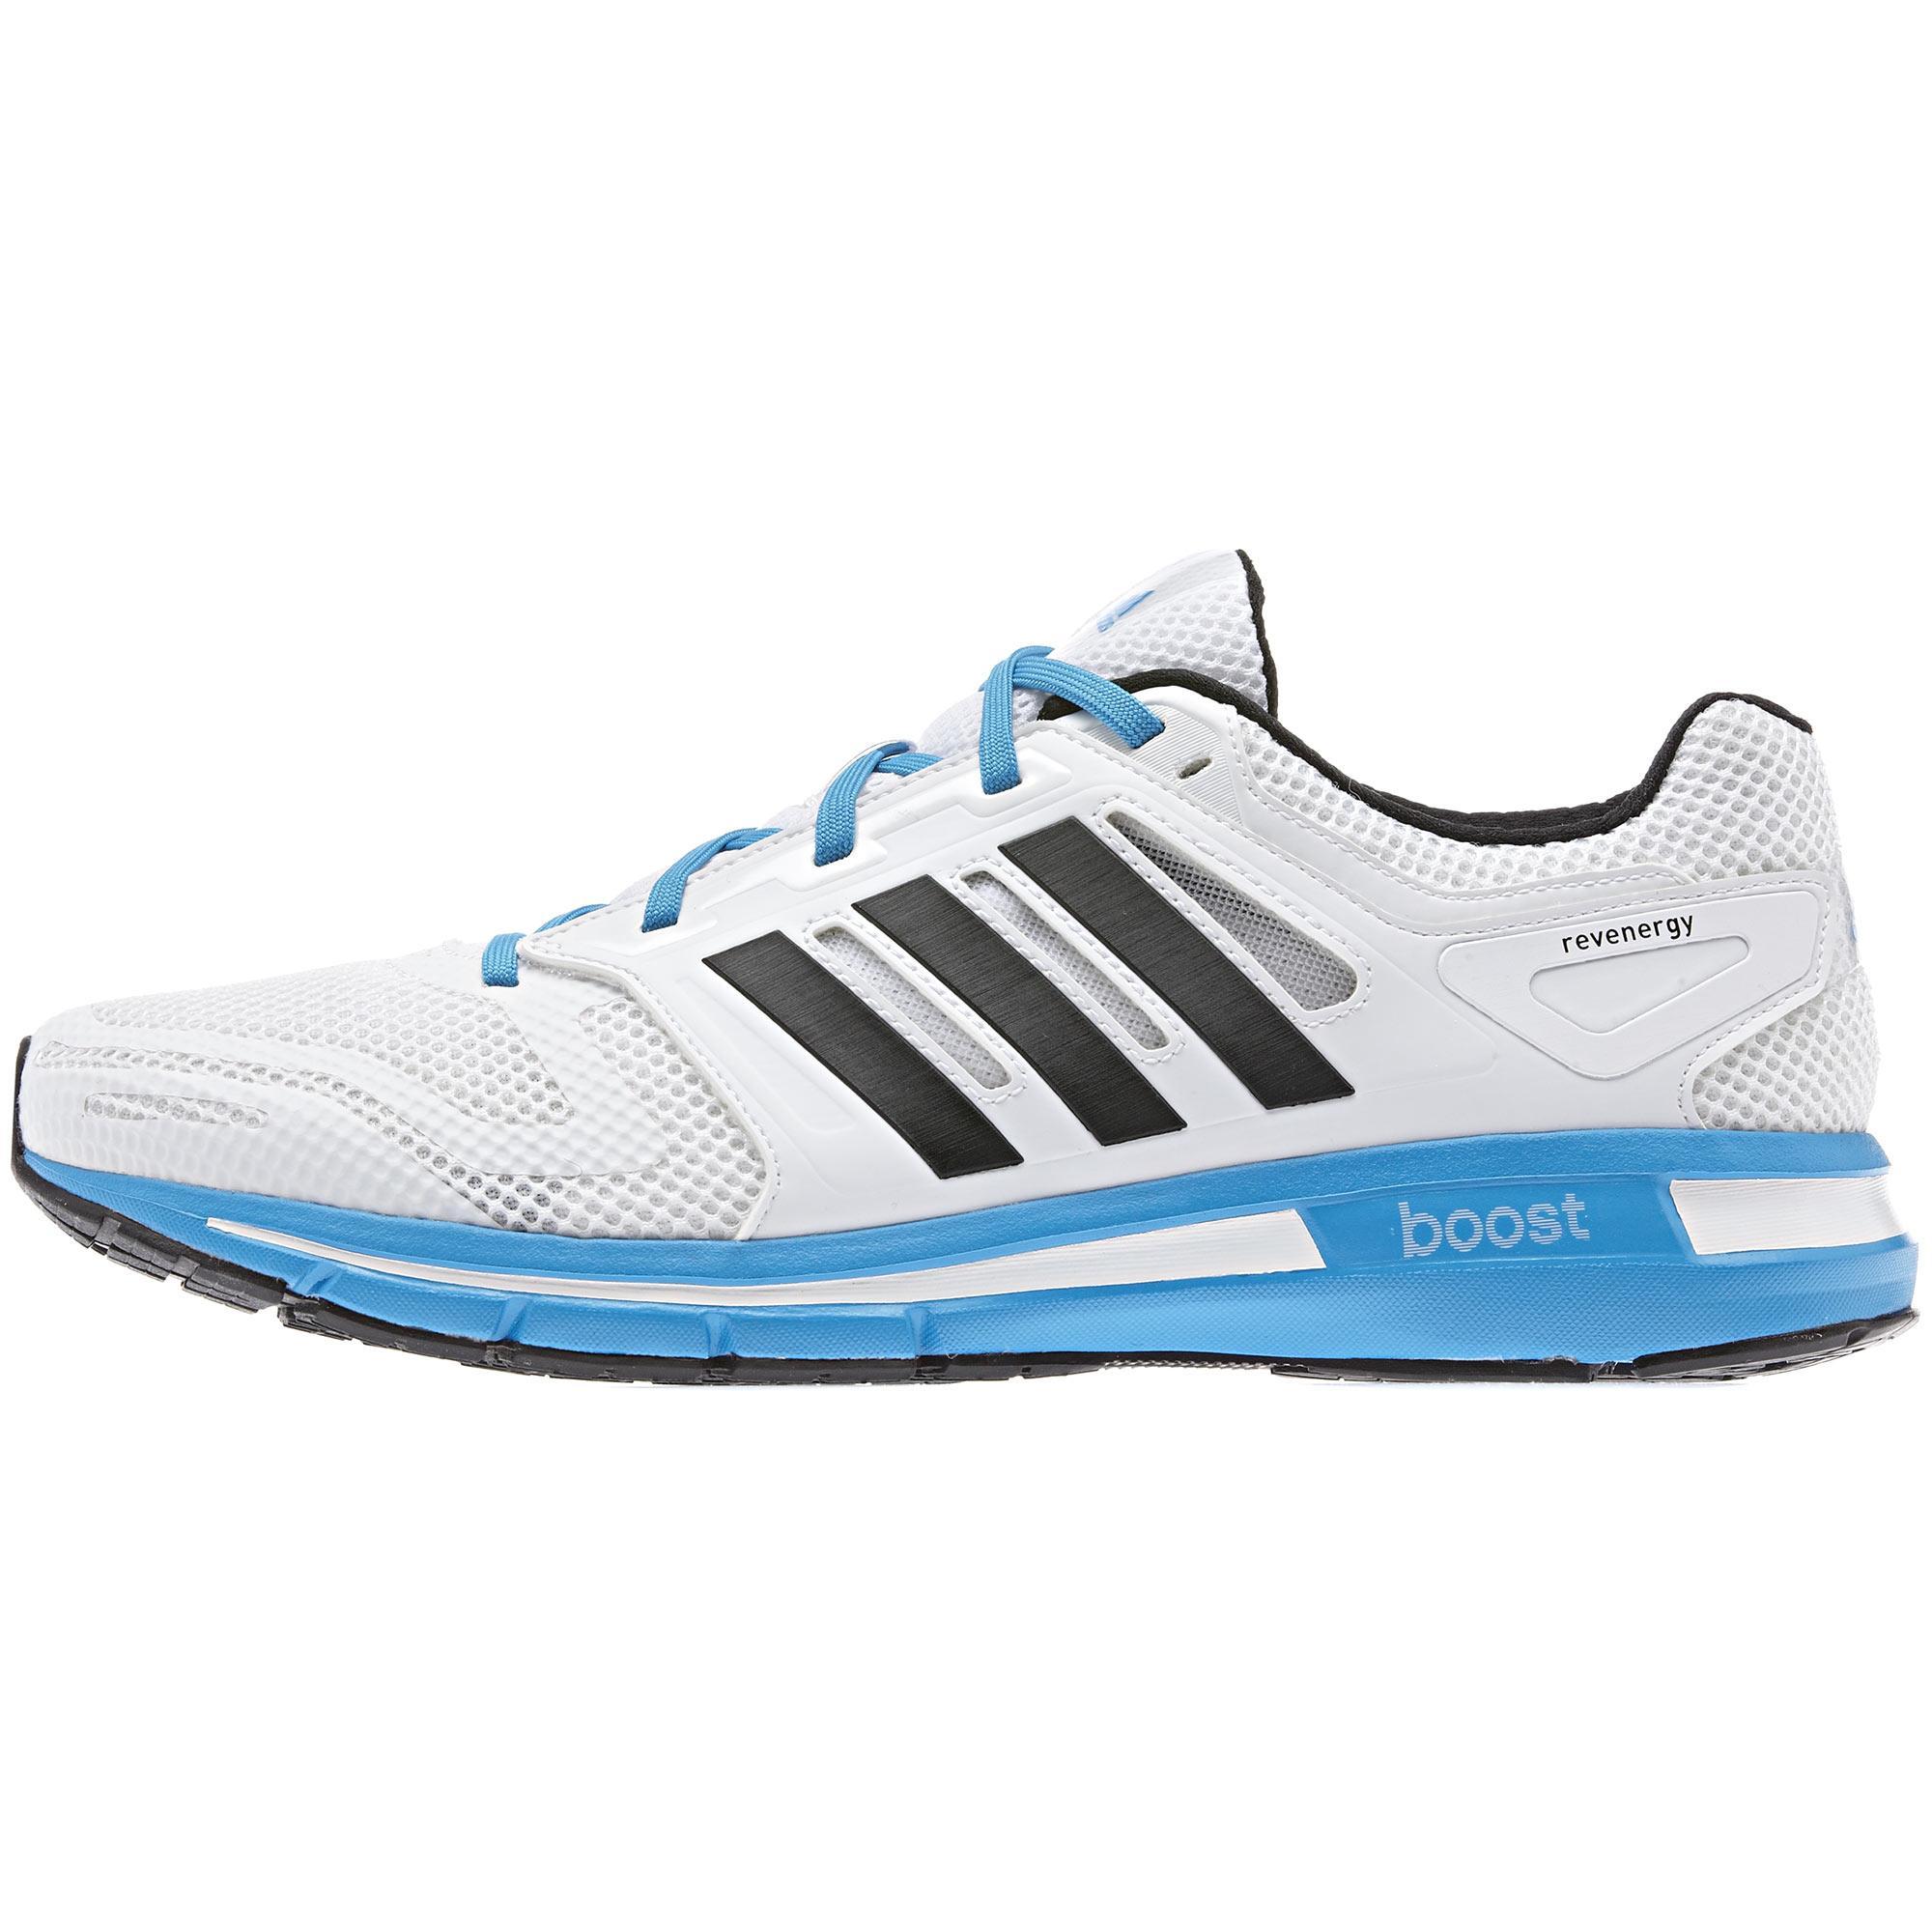 Mens Revenergy Running Shoes - White/Solar Blue -